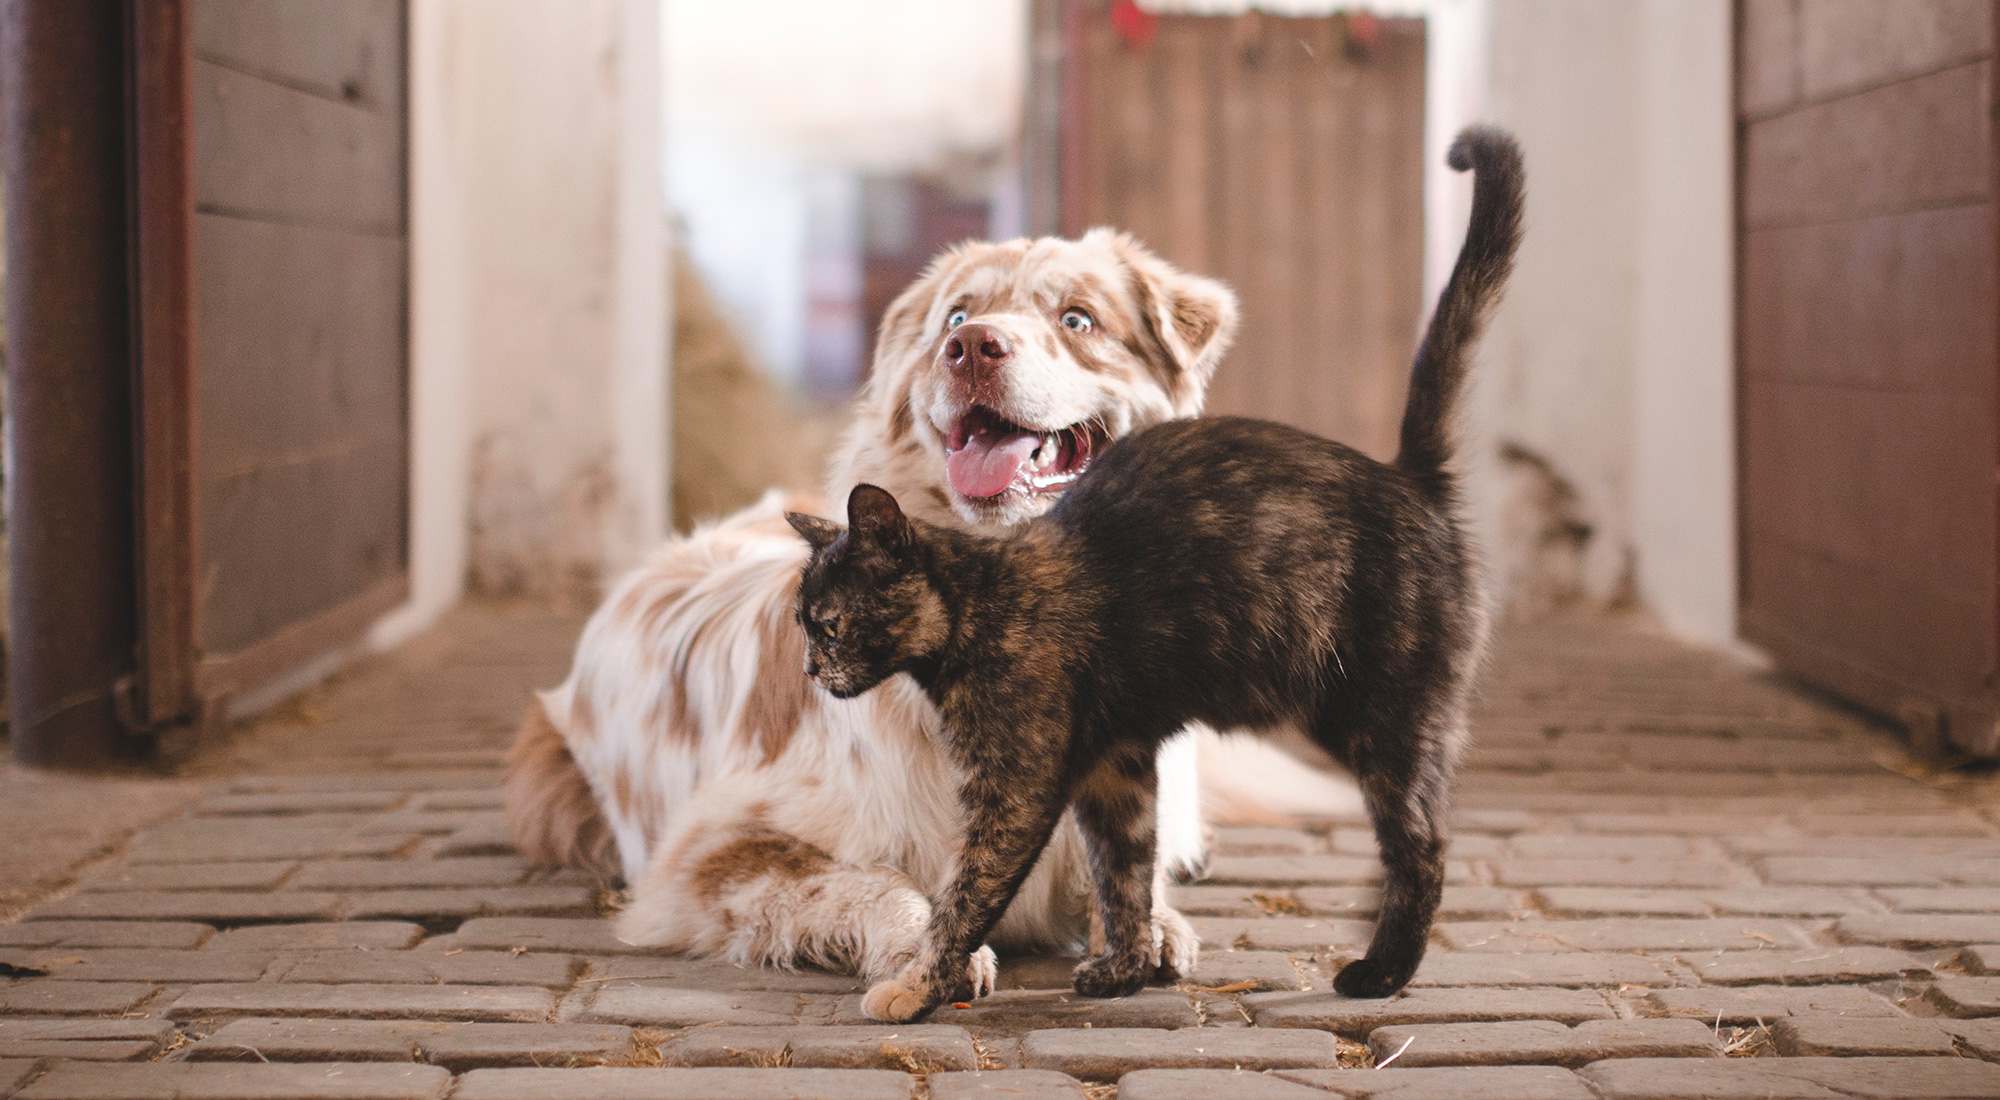 Ontwormen van honden en katten